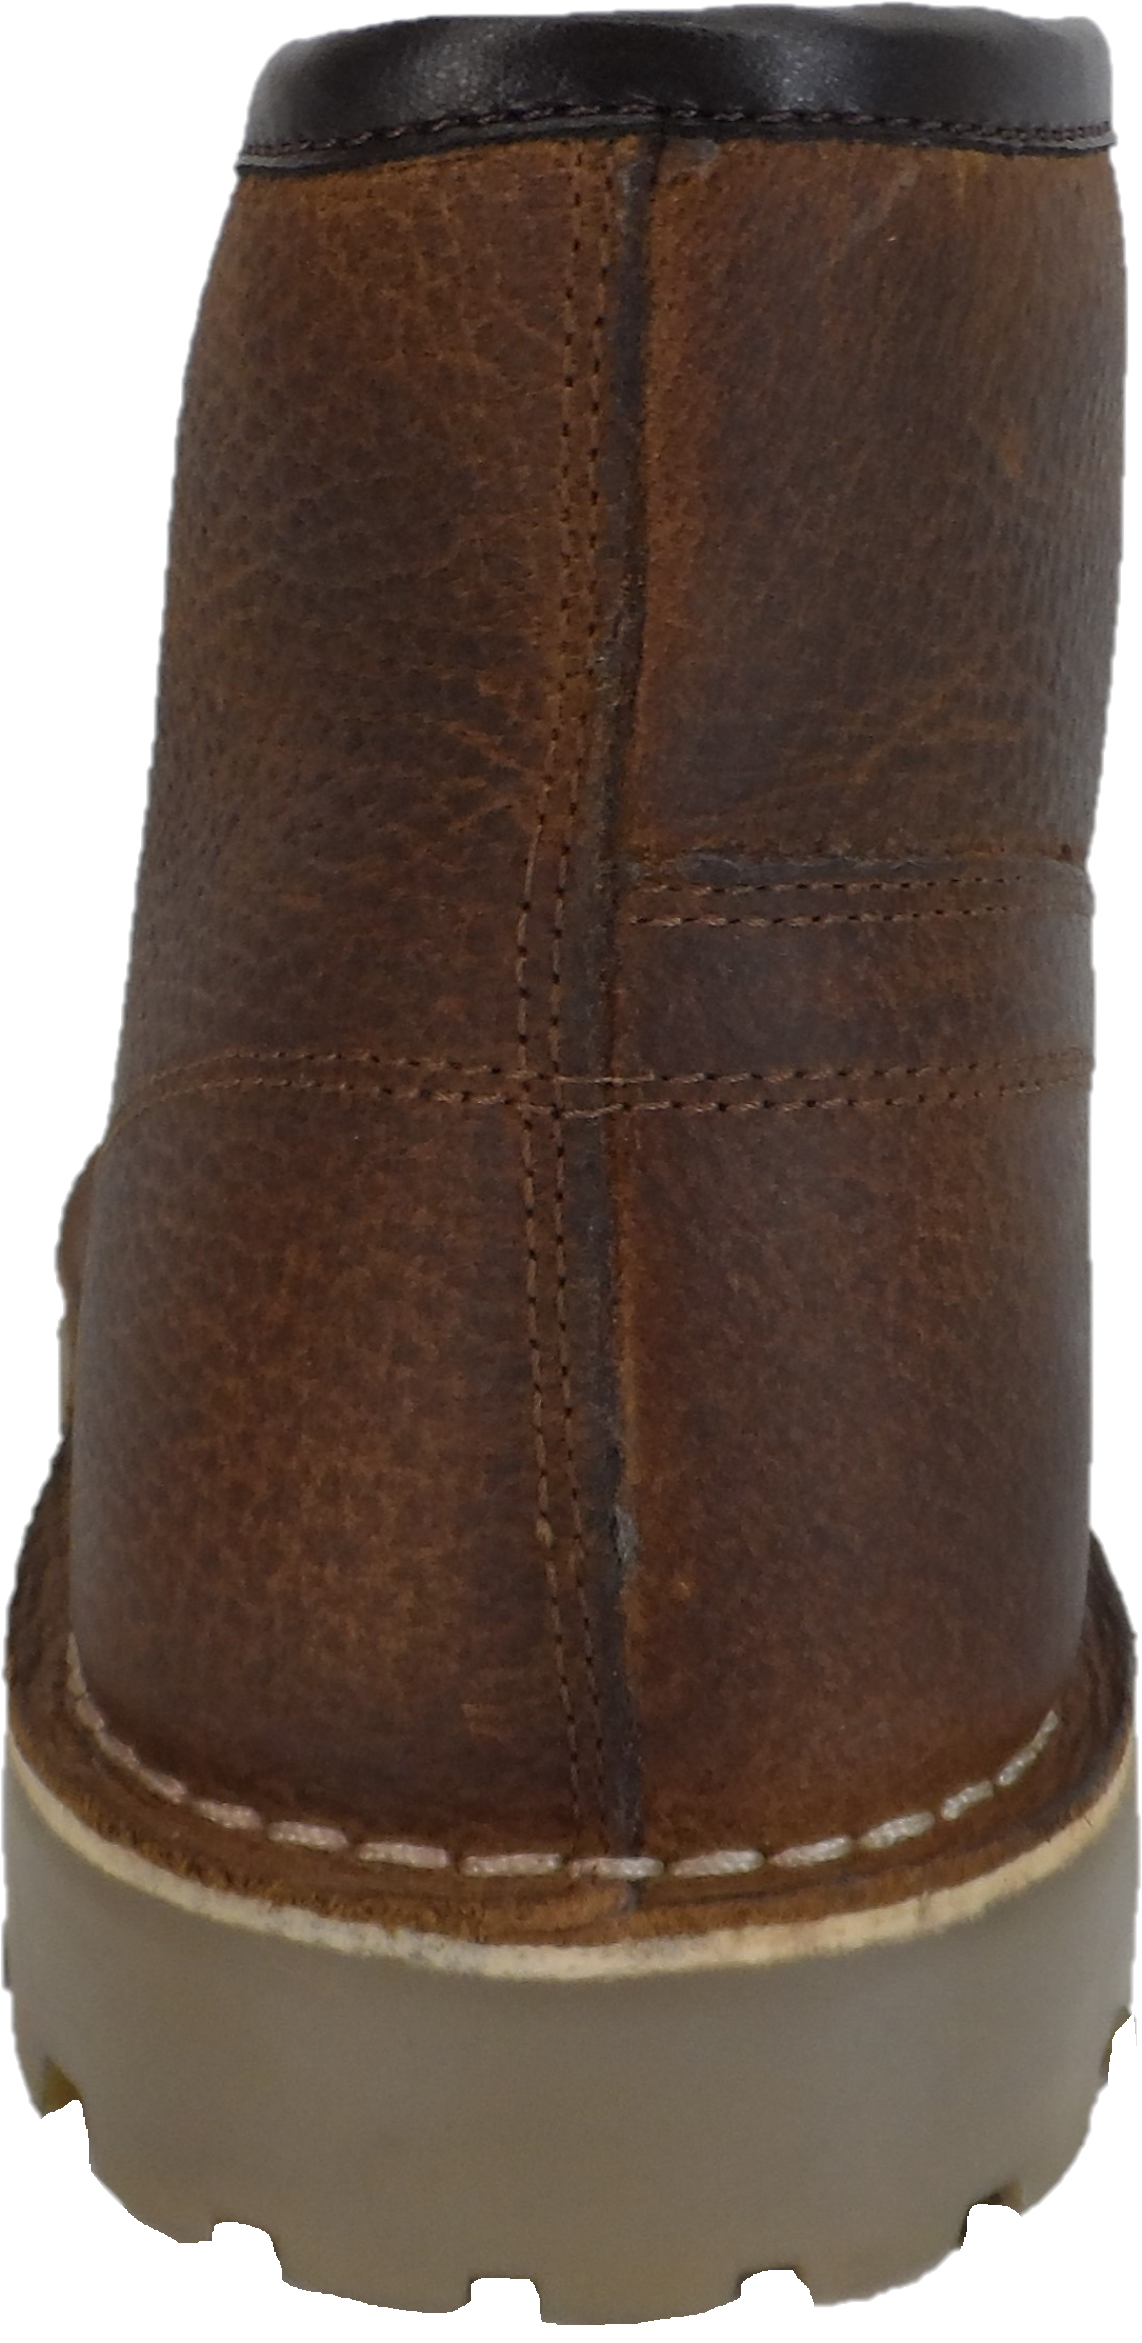 Monkey Boots من الجلد البني المحبب طراز السبعينيات الأصلي